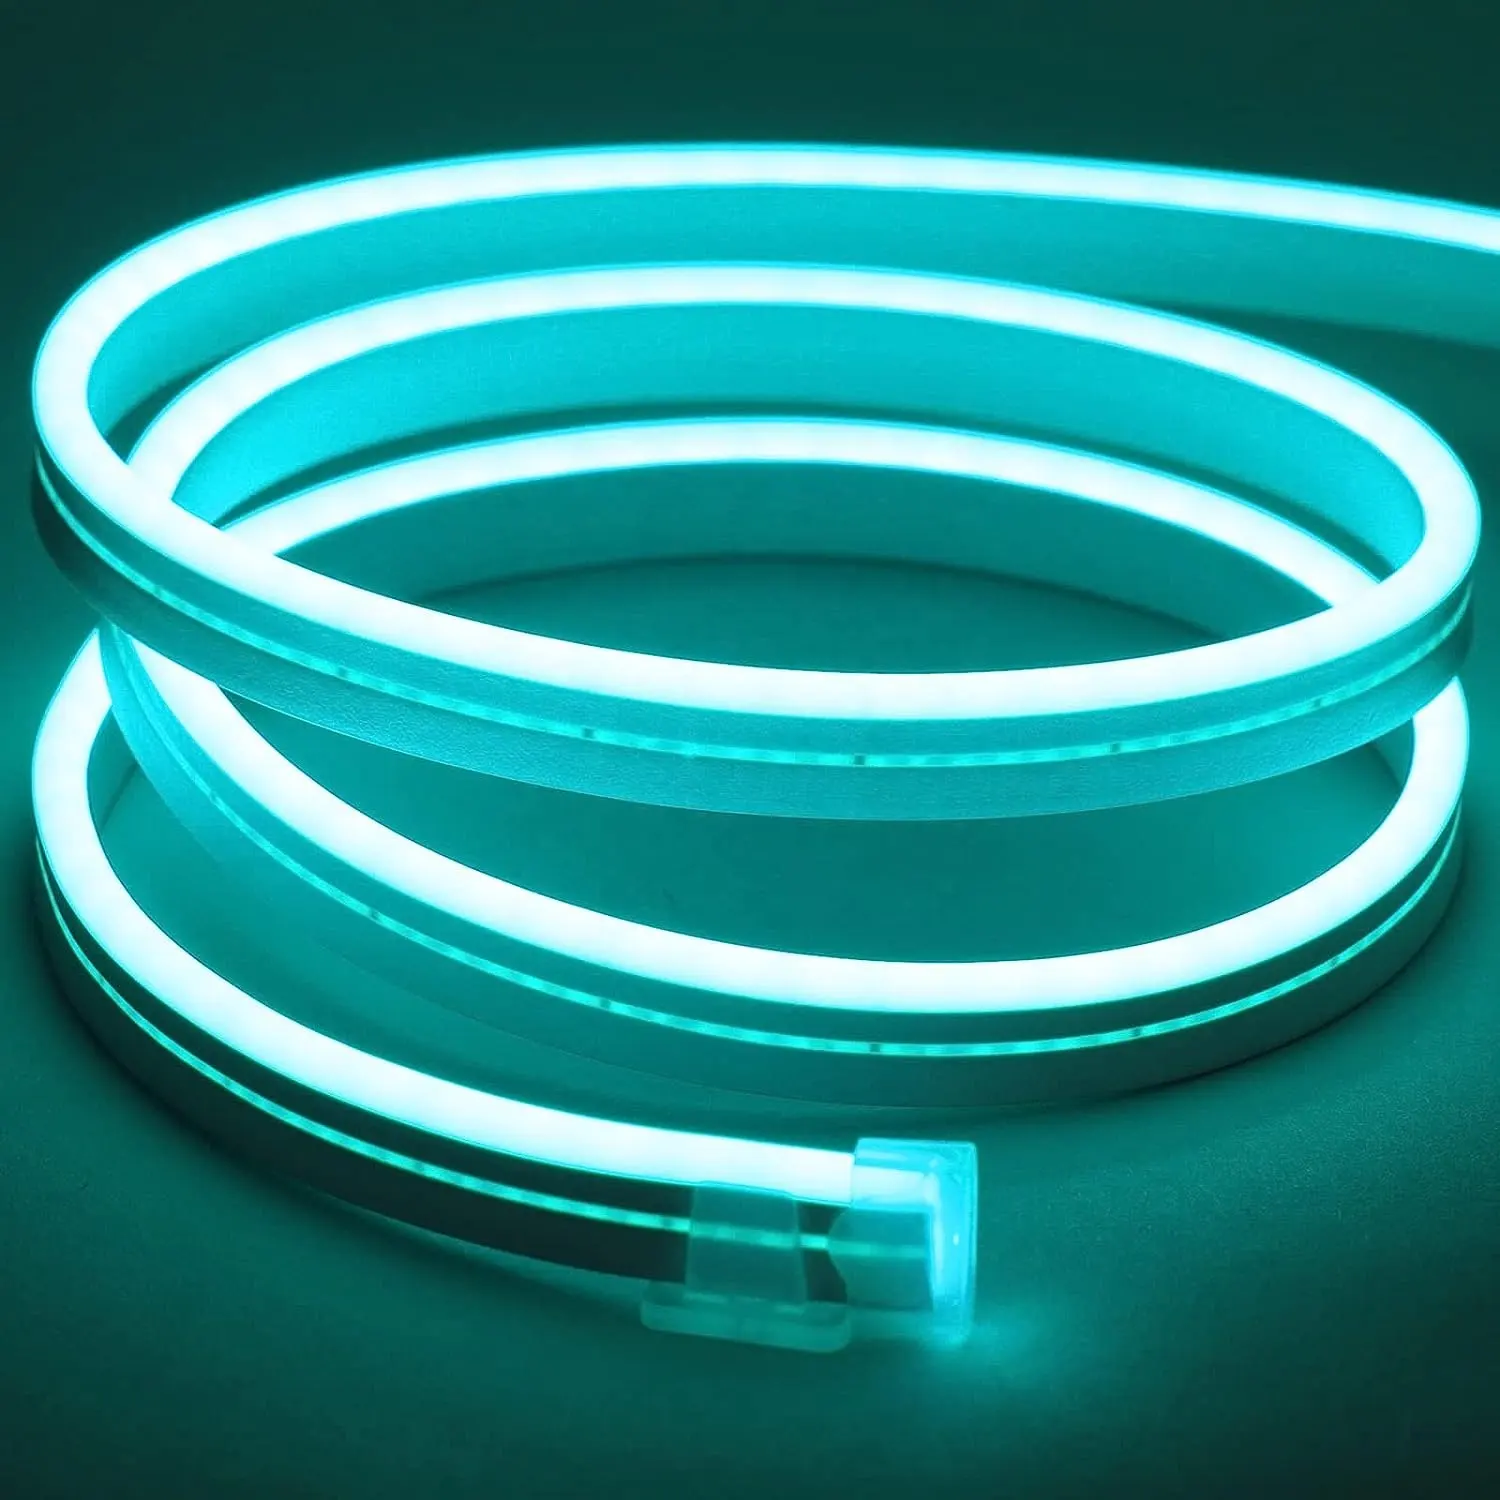 Schneid bares LED-Neonlichts eil Flexible Dekoration Neonlichter Neon-LED-Licht